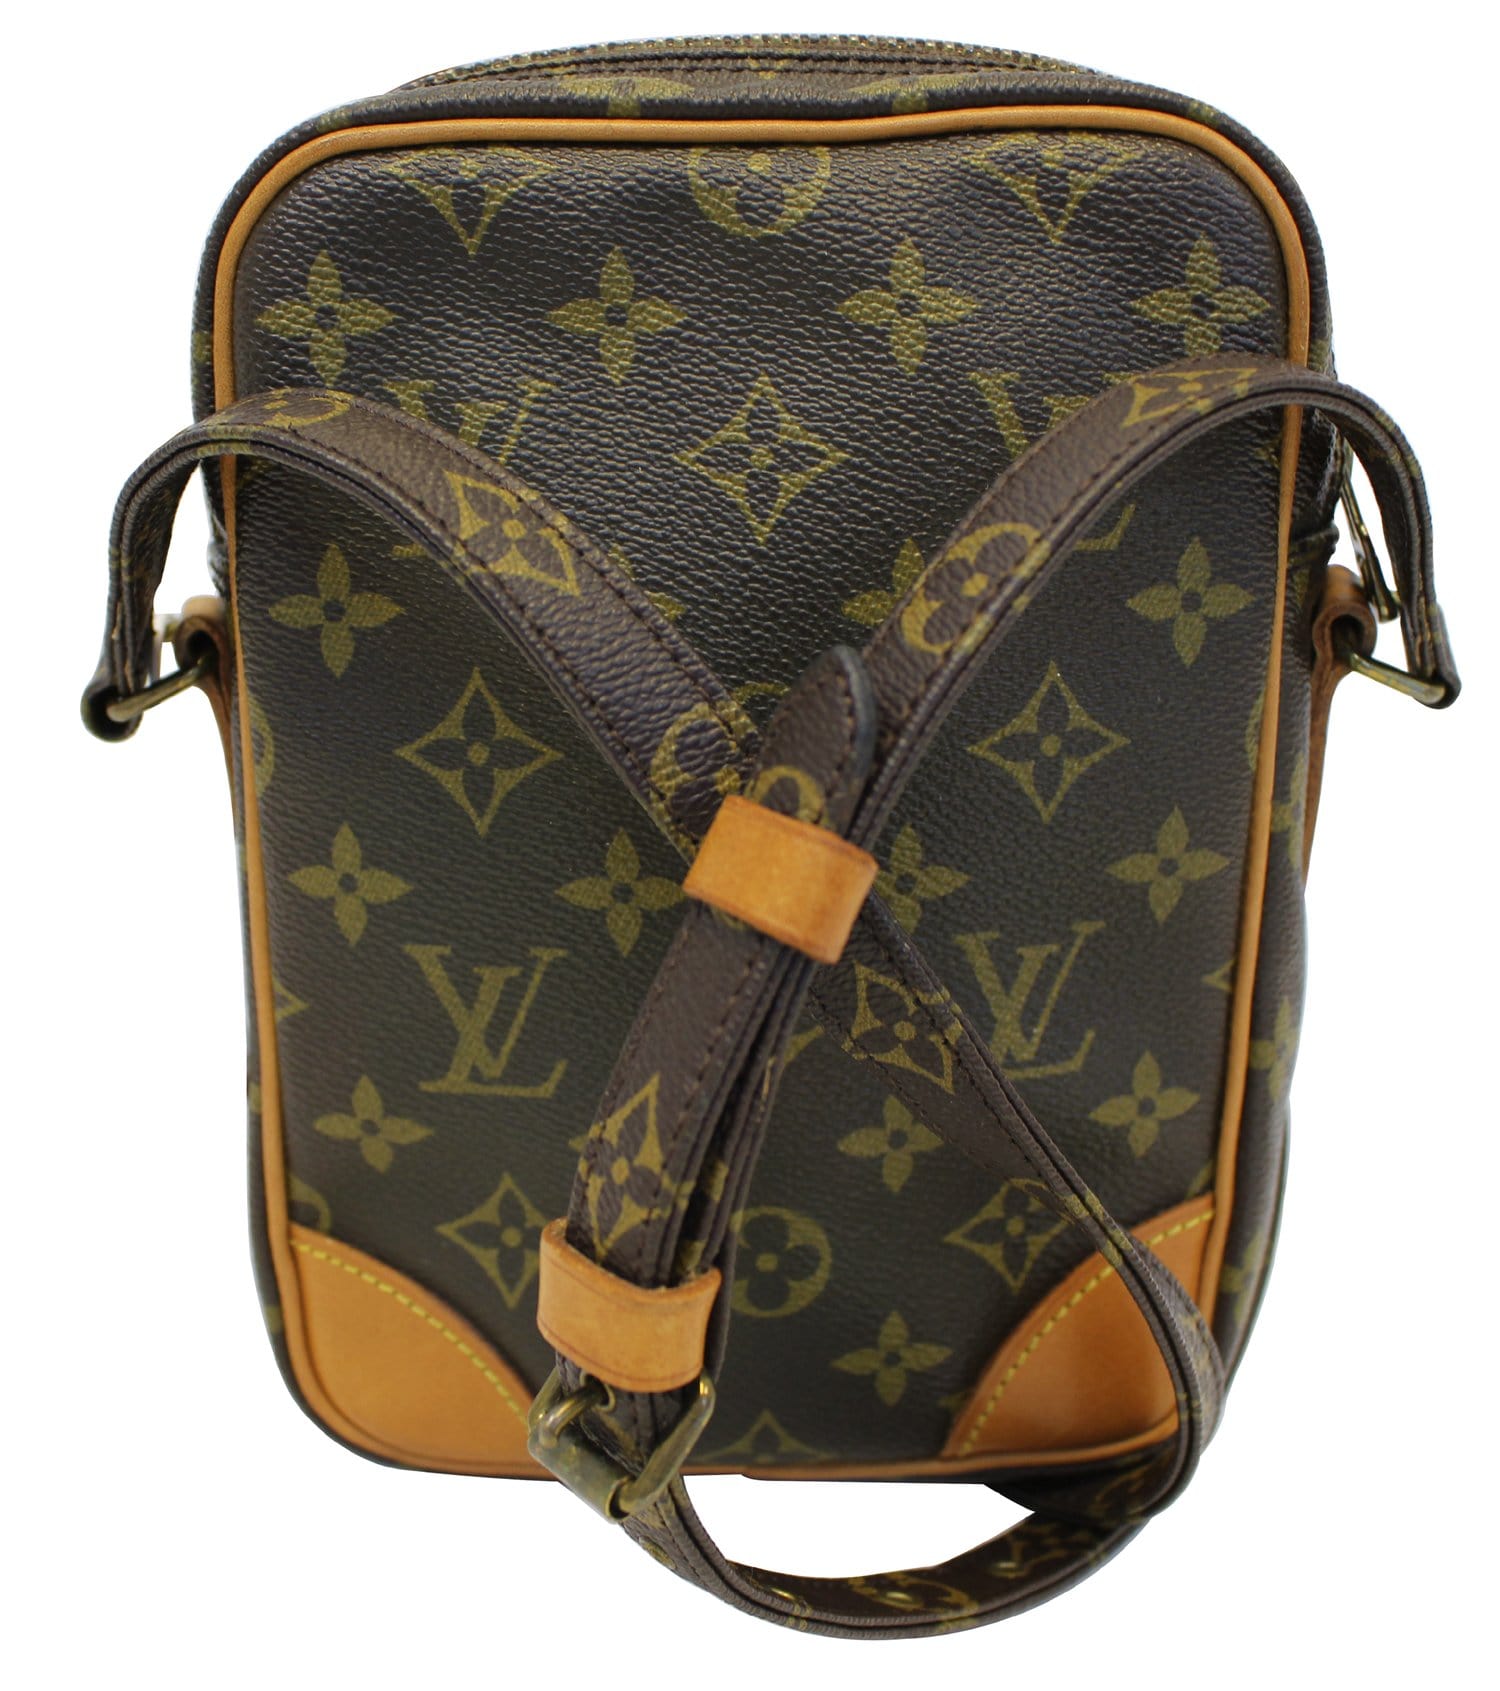 Louis Vuitton Ivy Handbag Monogram Canvas - ShopStyle Satchels